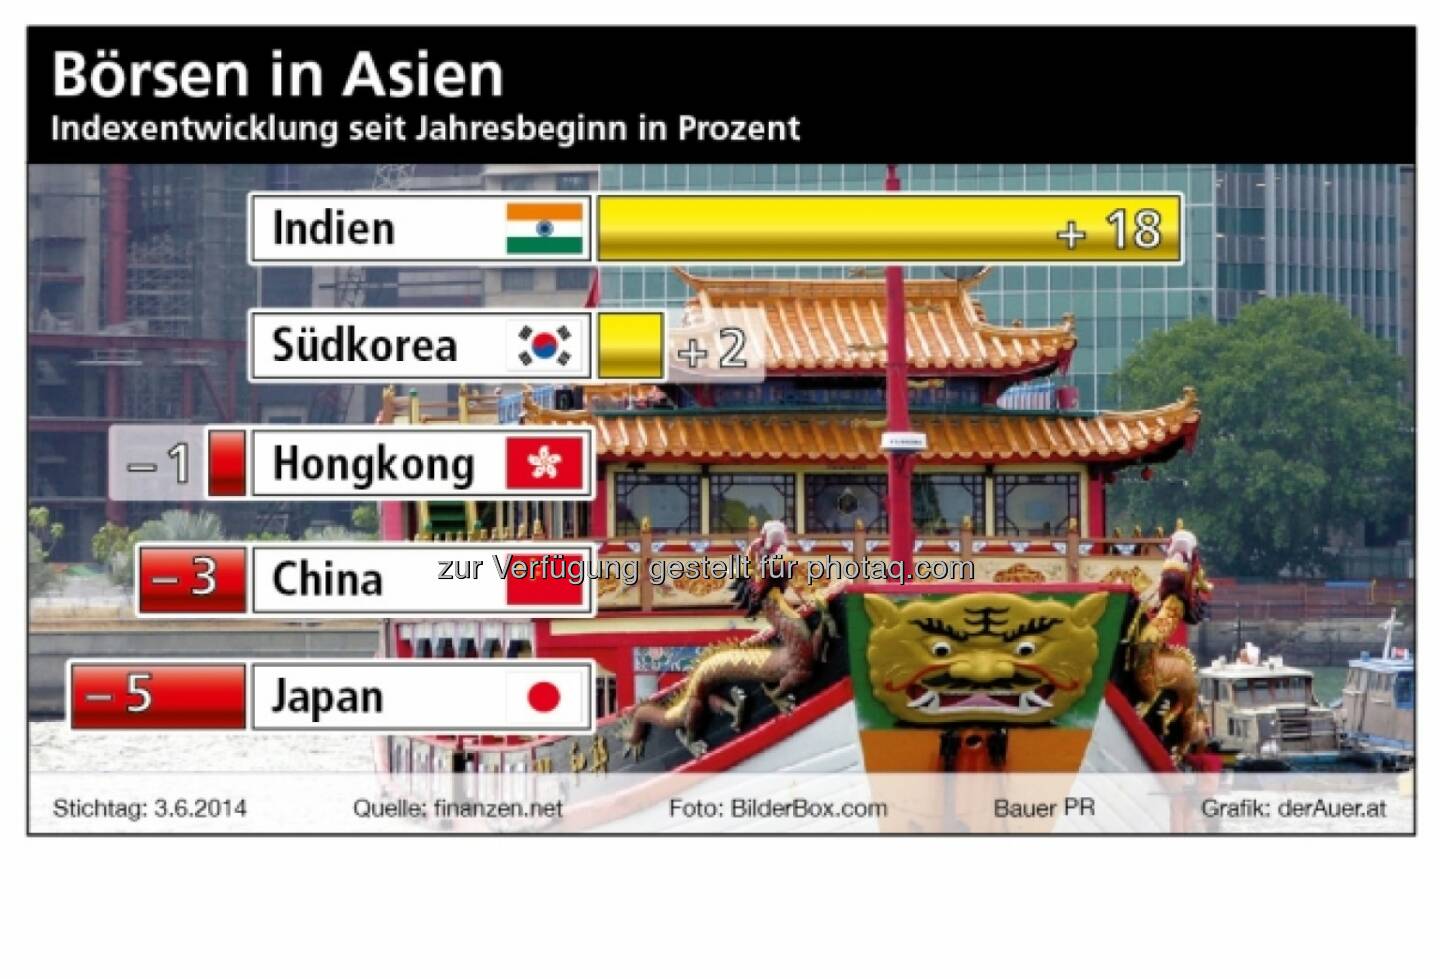 Börsen in Asien: Indien, Südkorea, Hongkong, China, Japan (derauer.at)